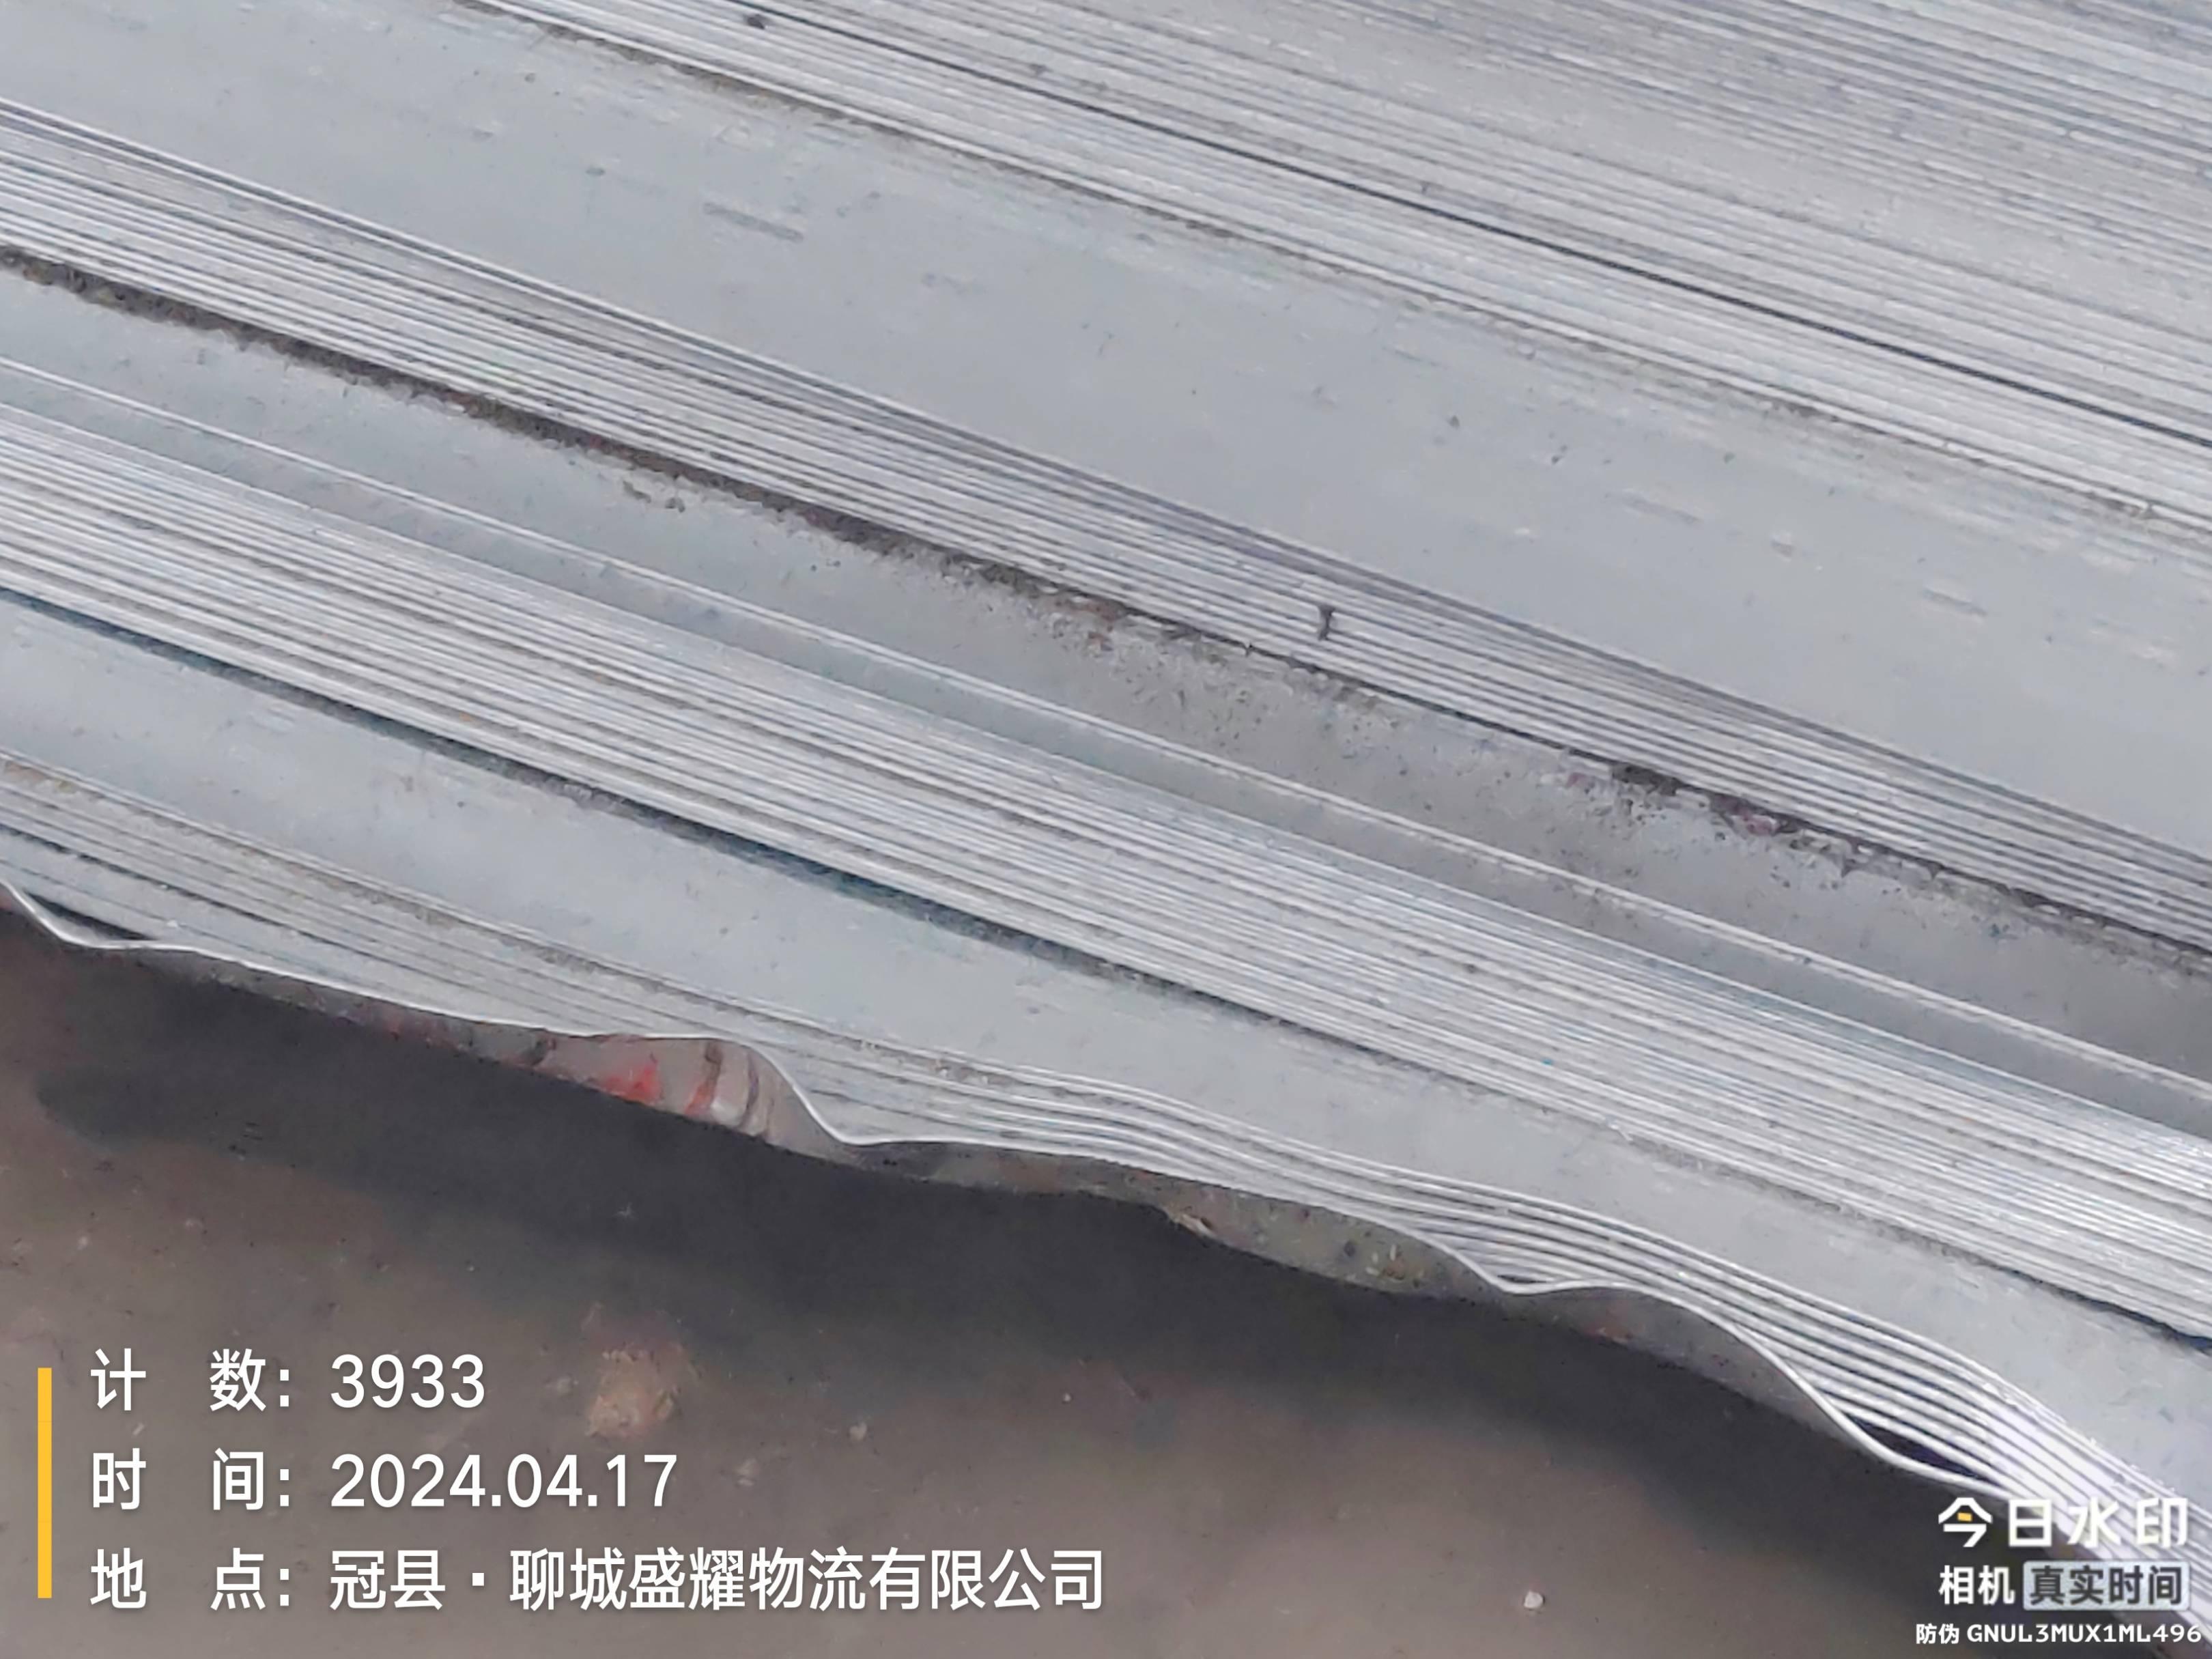 27.33吨破损镀锌板拍卖公告